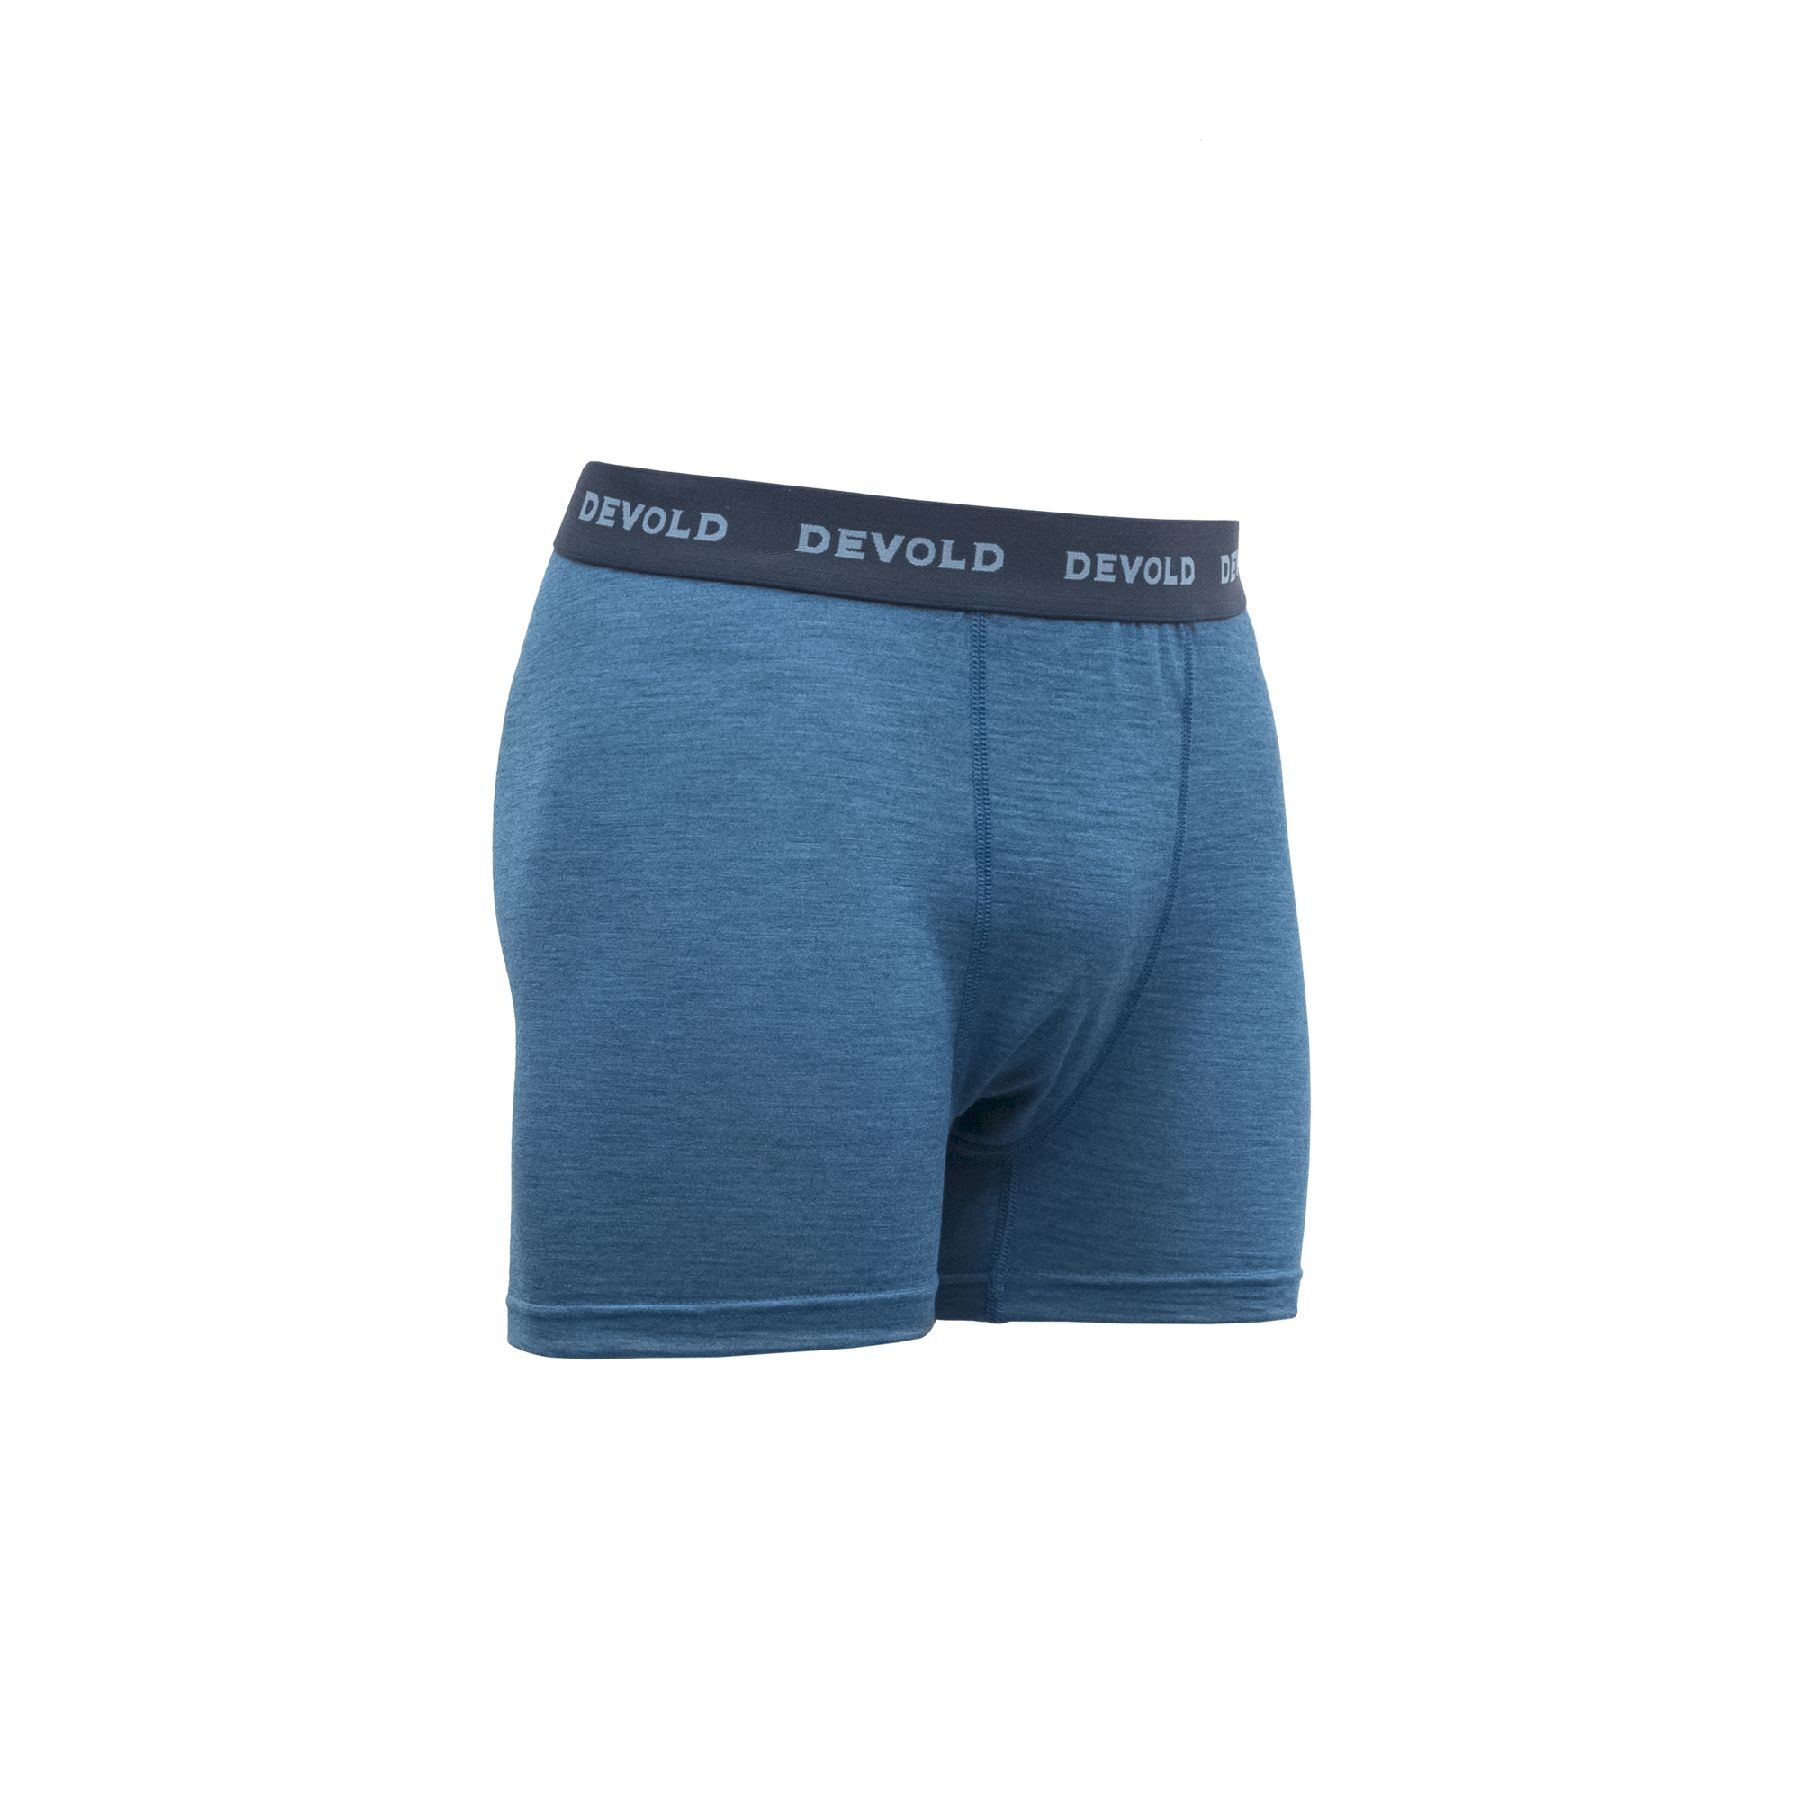 Devold Breeze - Underwear - Men's